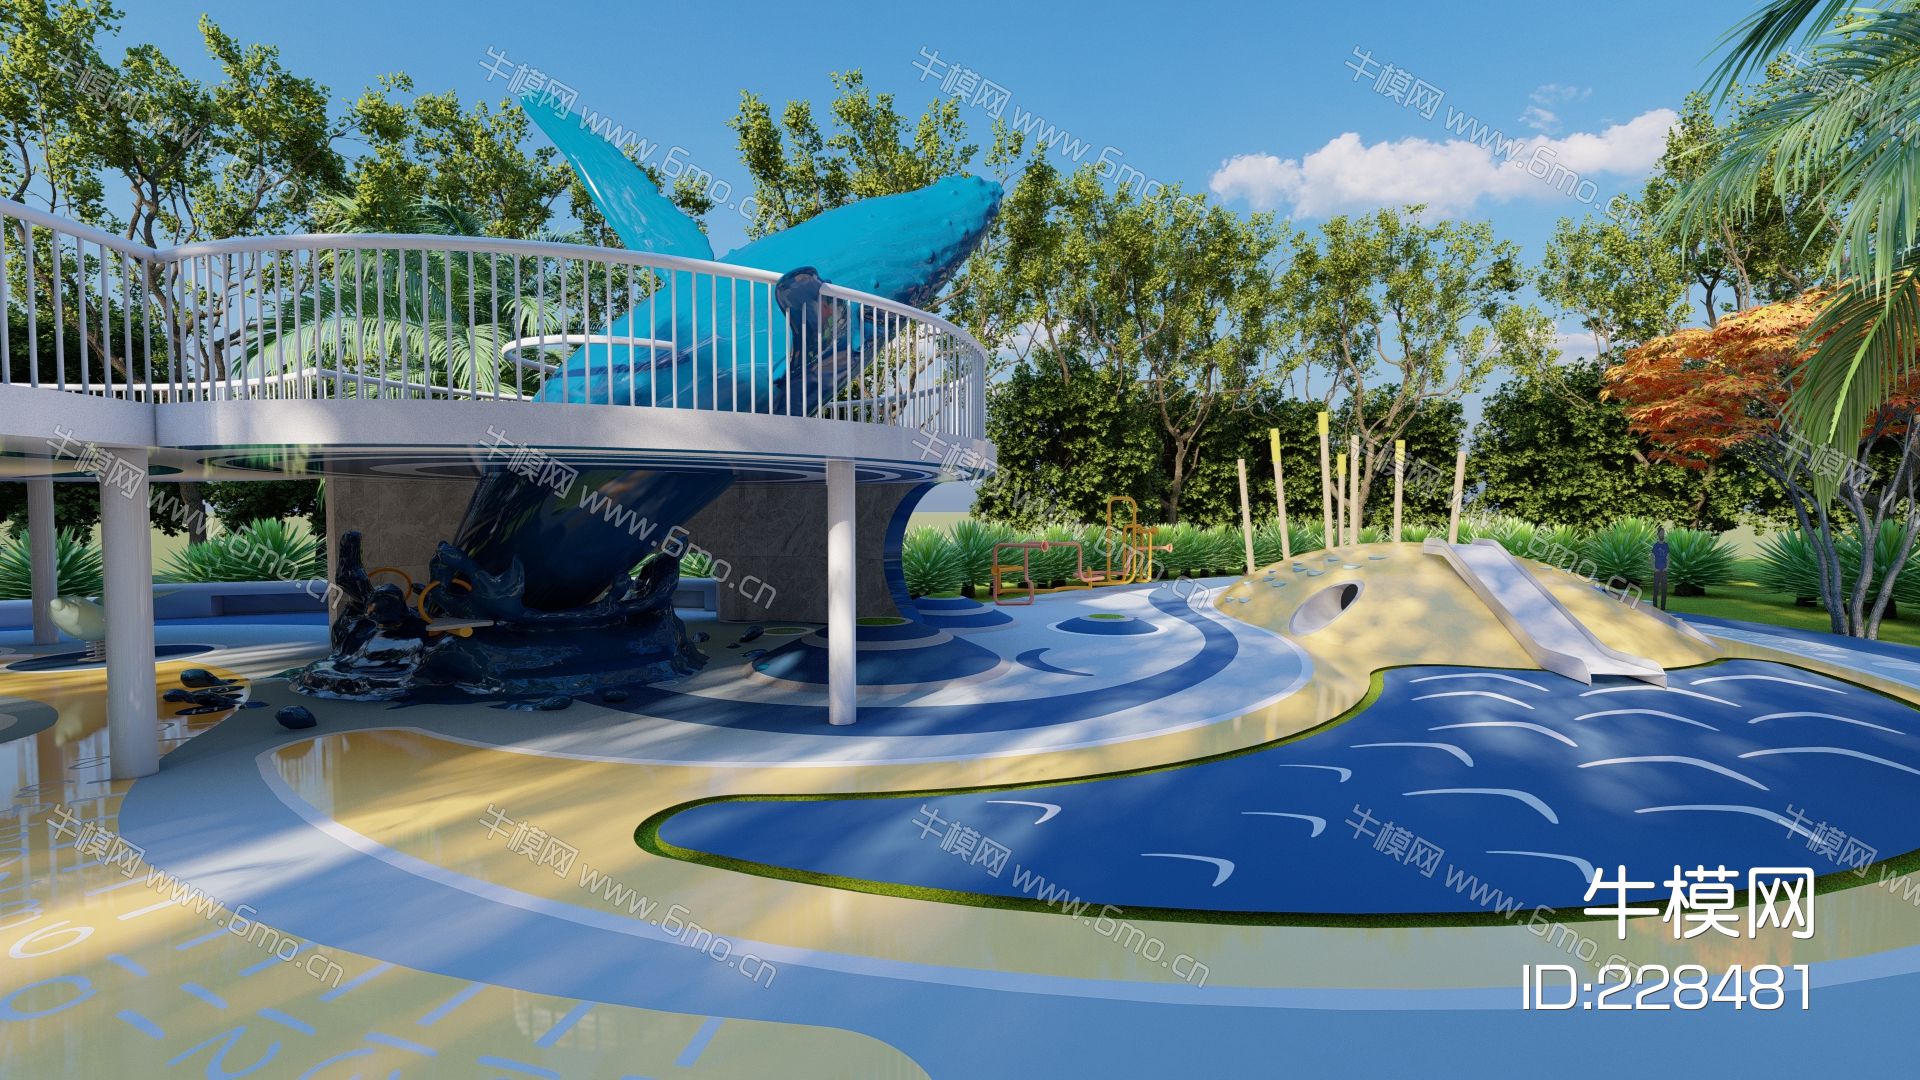 现代鲸鱼主题儿童乐园 鲸鱼构架 游乐器材 滑滑梯 儿童游乐园.rar